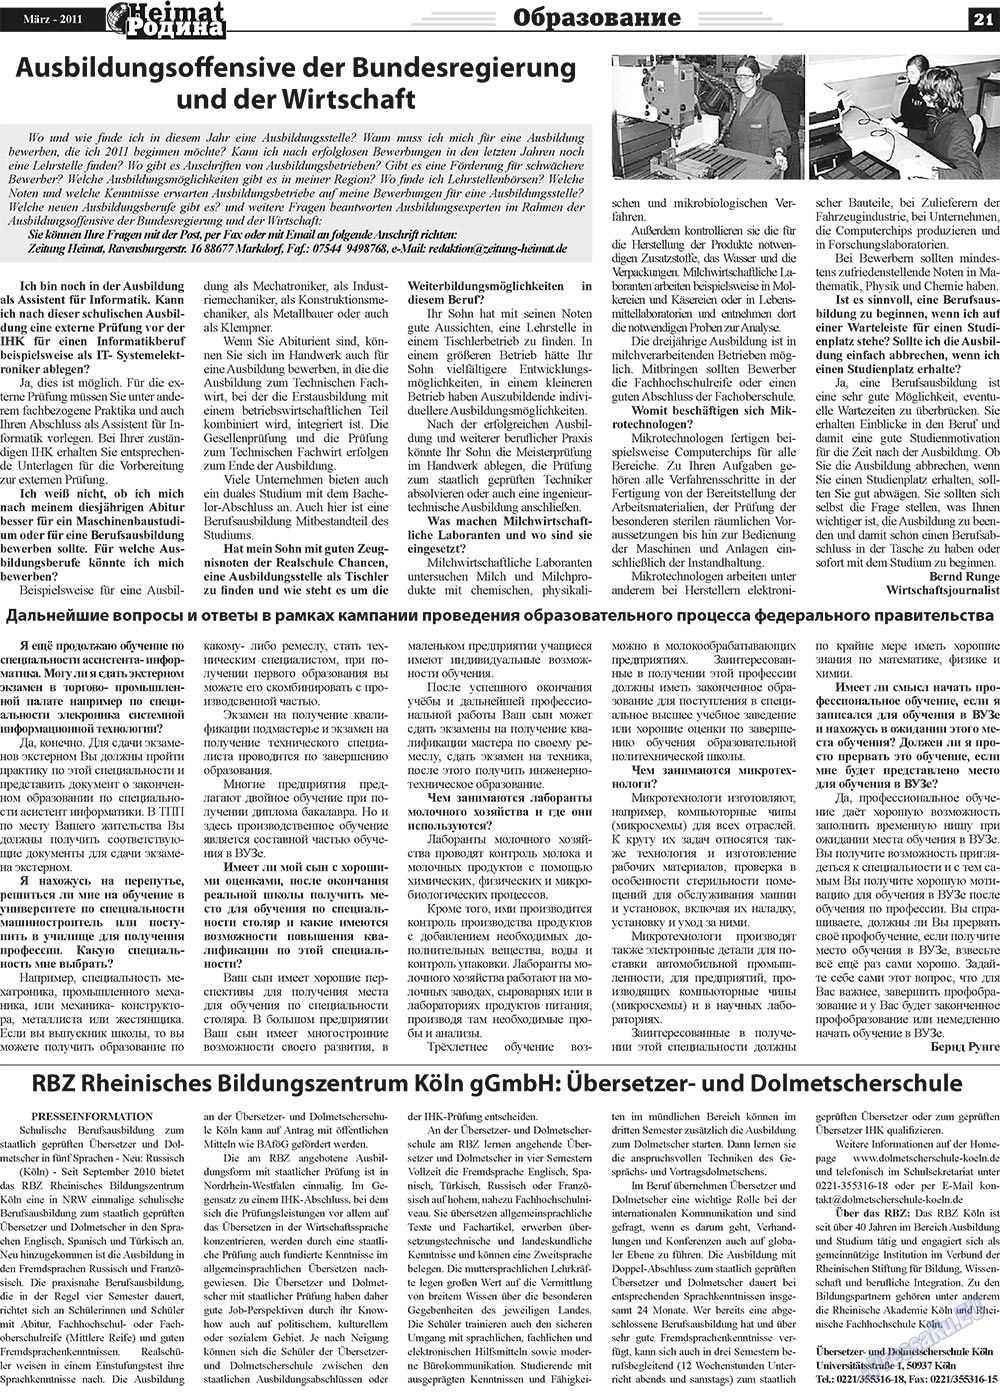 Heimat-Родина (газета). 2011 год, номер 3, стр. 21